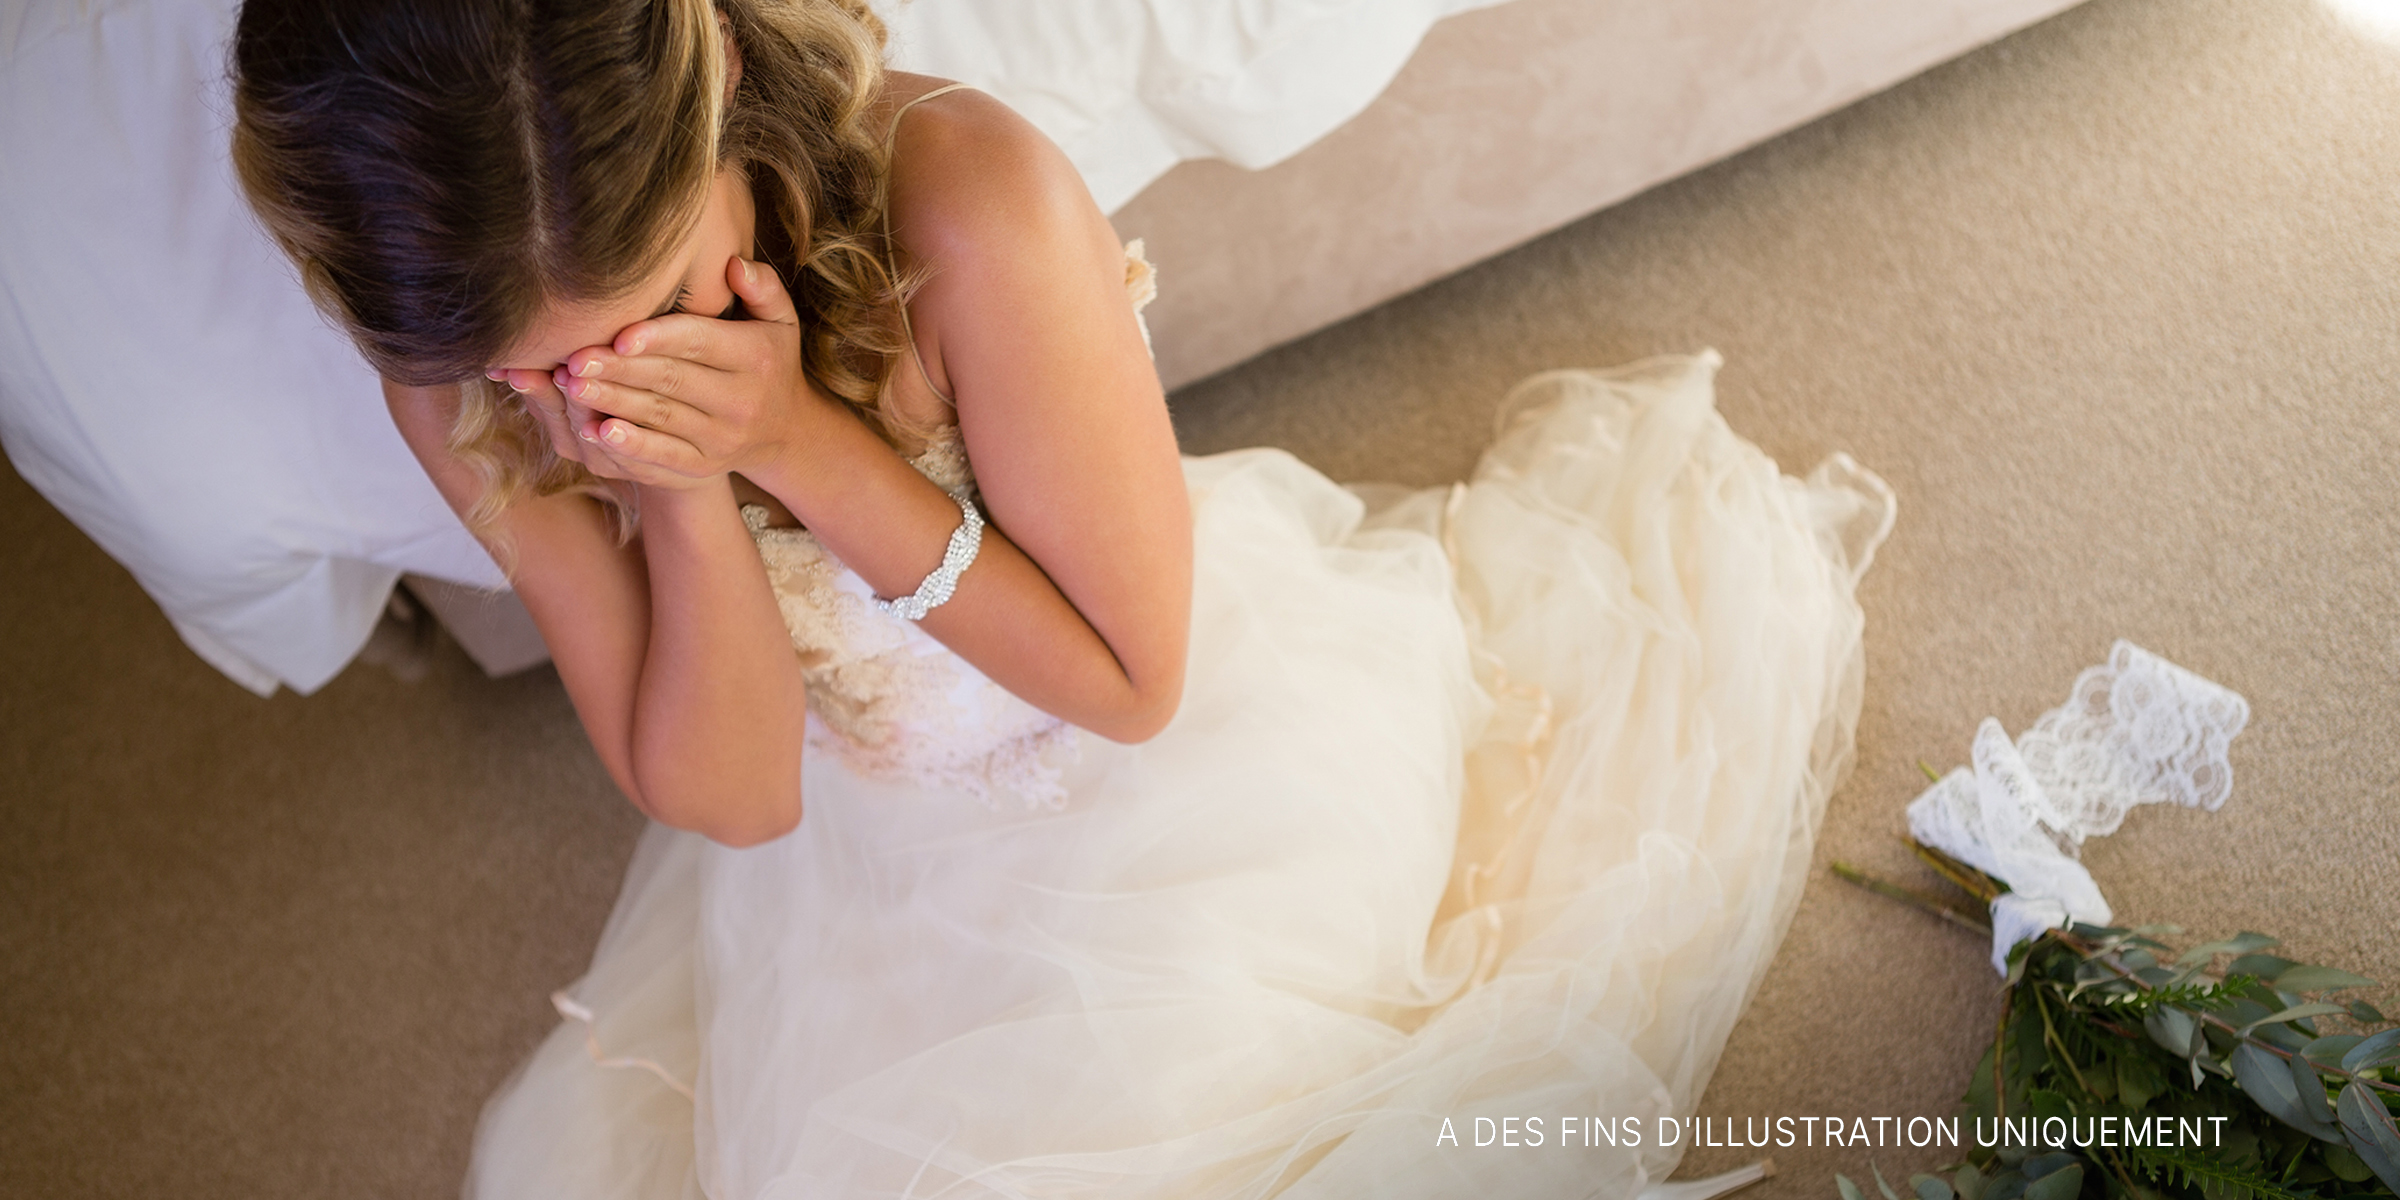 Une mariée en pleurs | Source : Shutterstock